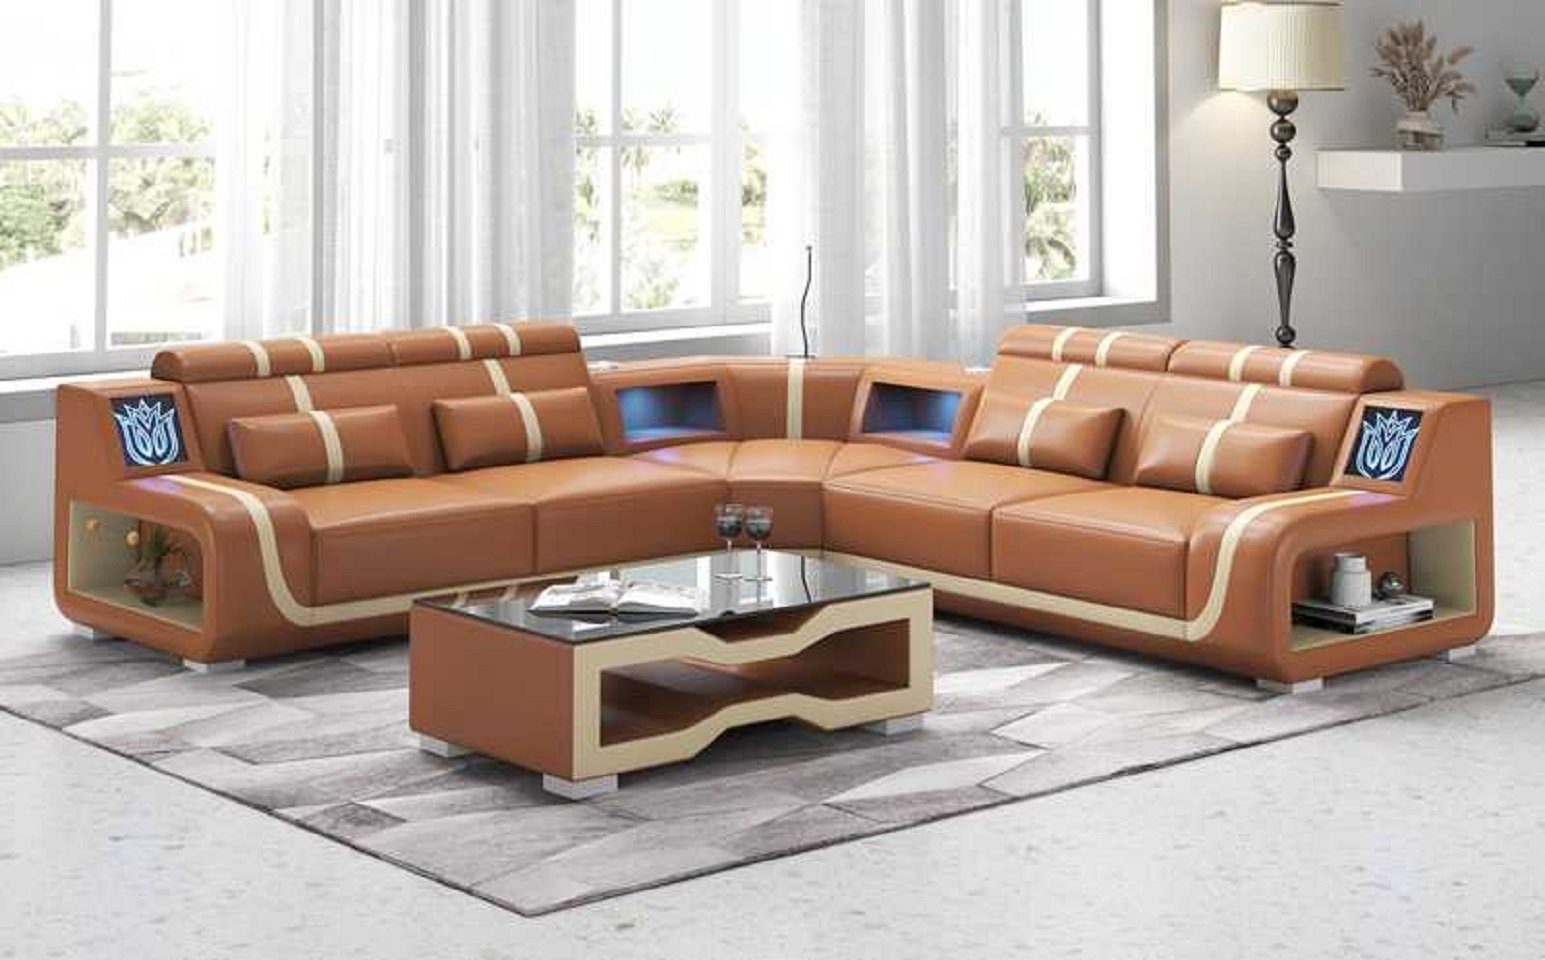 Europe Teile, Ecksofa 3 Made Modern Sofa Couch Braun couchen Ecksofa L Sofas, JVmoebel Luxus Form Kunstleder in